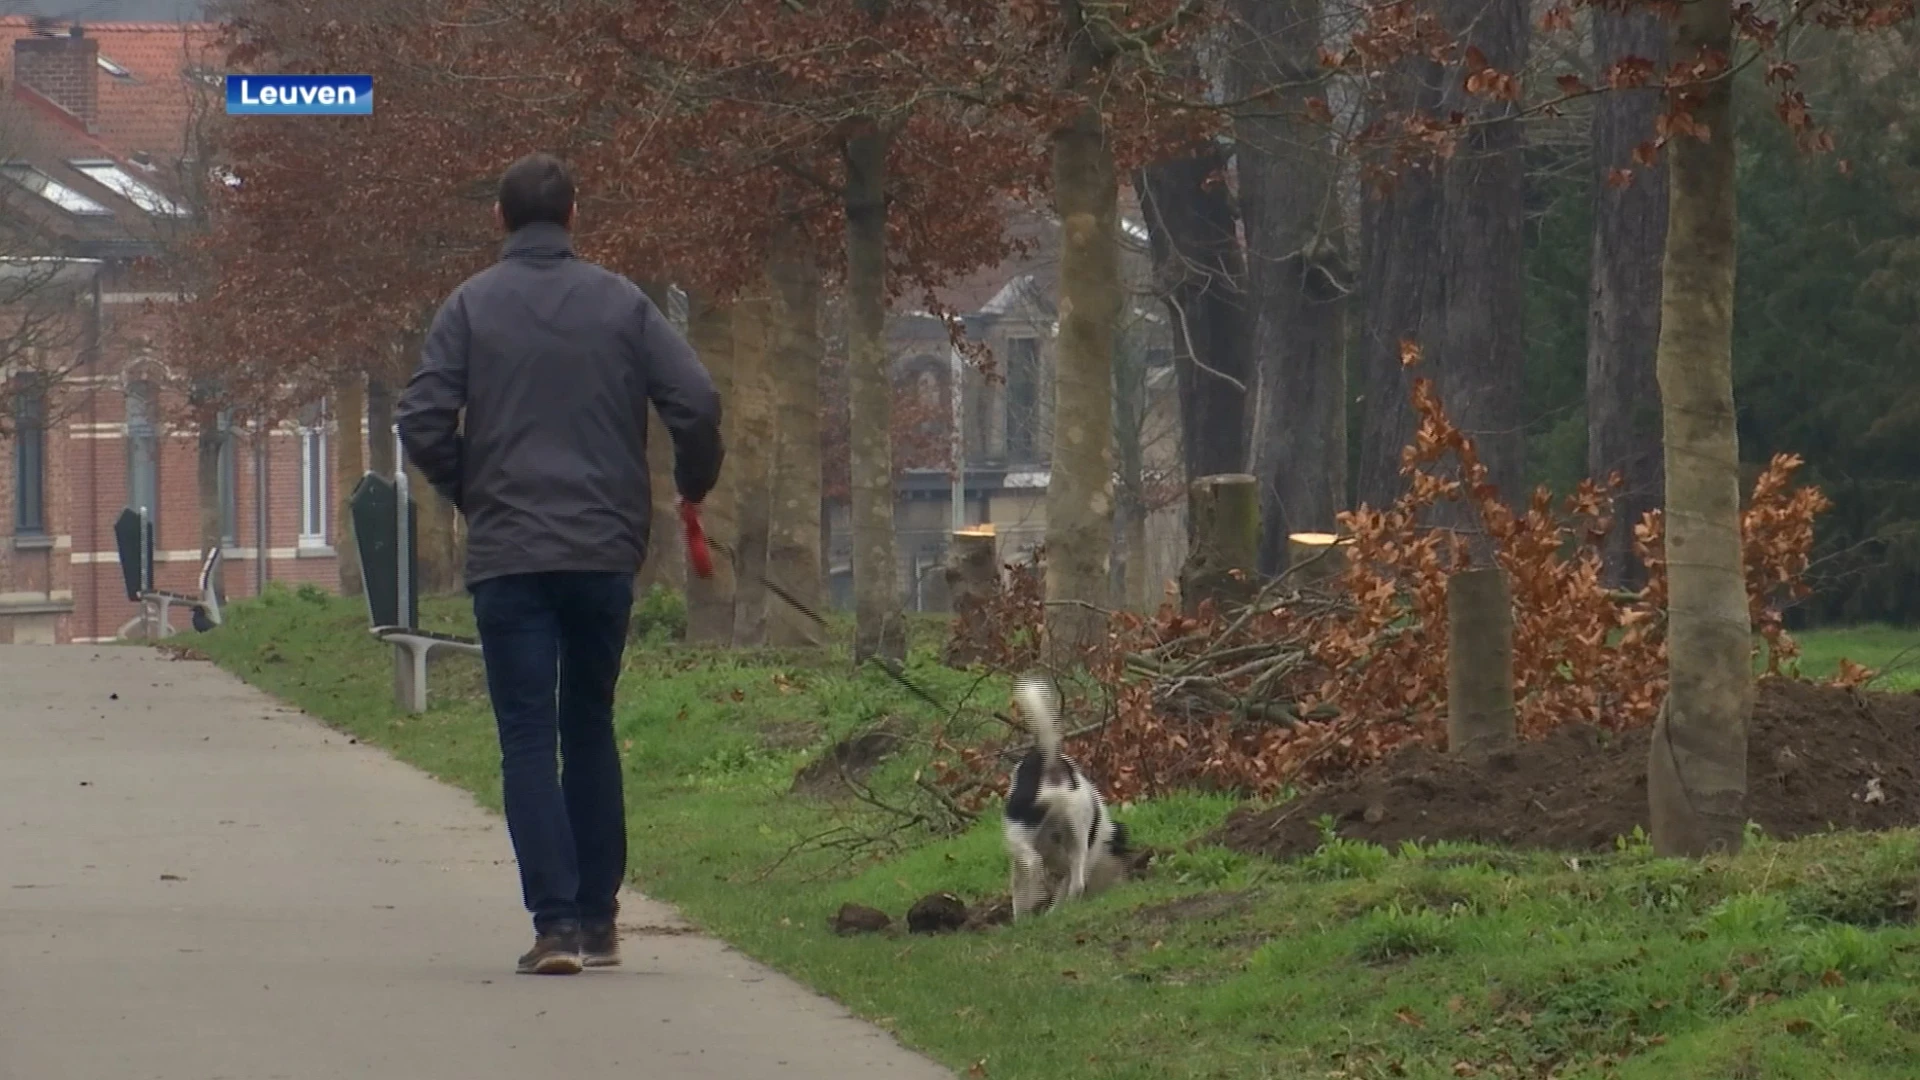 Stad Leuven kapt 48 bomen aan de ring amper vijf jaar na aanplanting: "Wij hadden hier nog zo voor gewaarschuwd!"